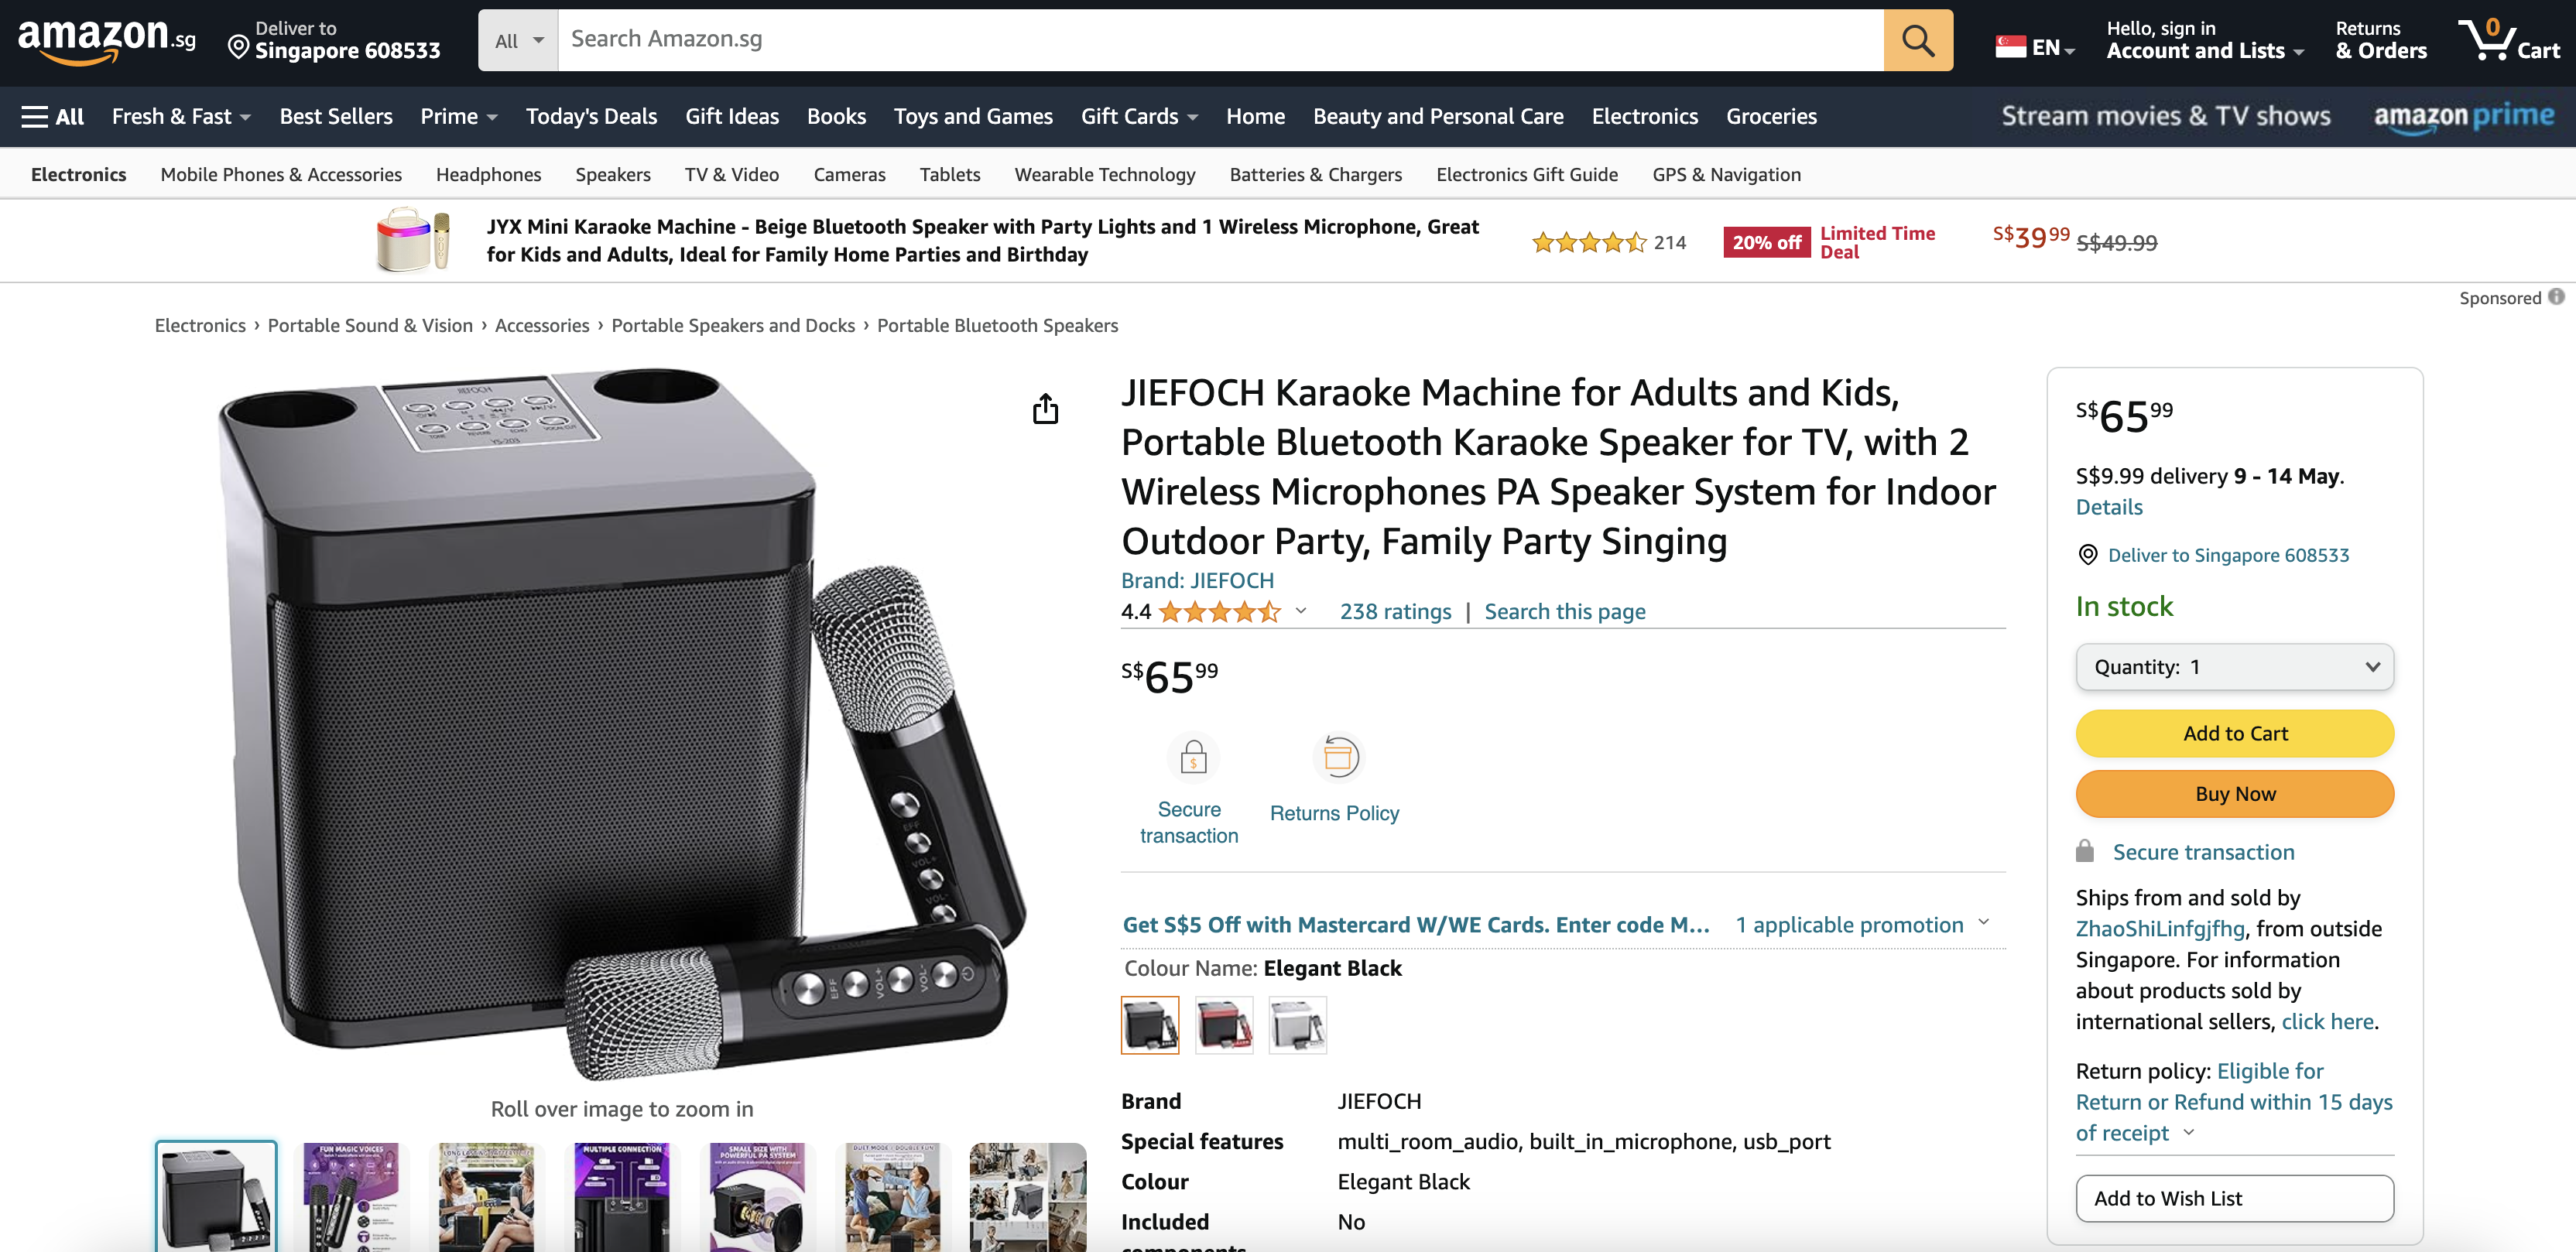 JIEFOCH Karaoke Machine for Adults and Kids